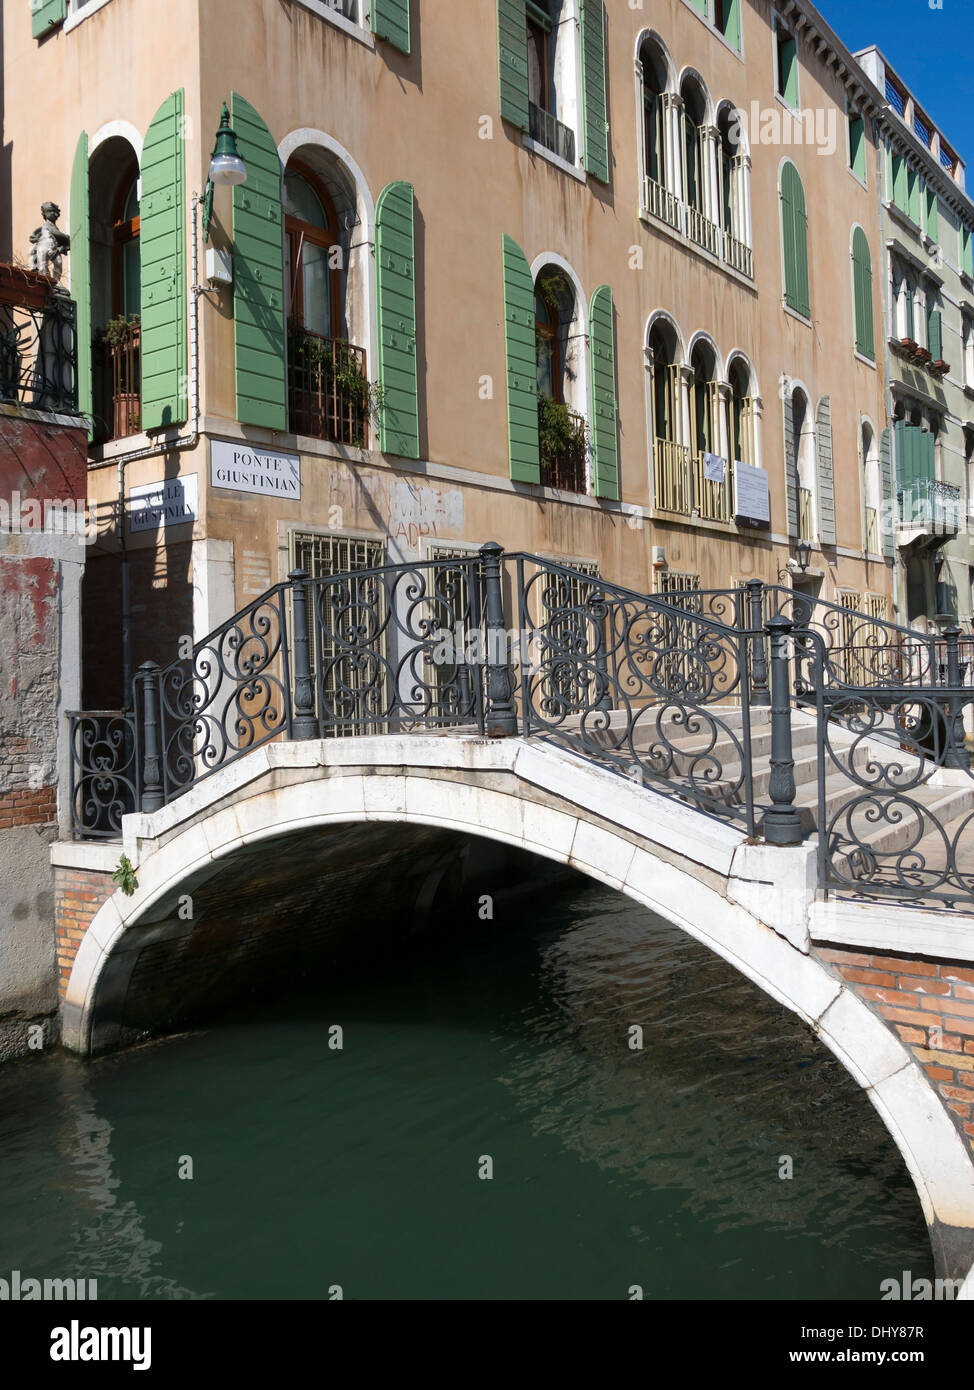 Pietra Bianca il ponte di arco di Pont Giustinian con ringhiere in ferro battuto su canale veneziano, Venezia, Italia. Foto Stock